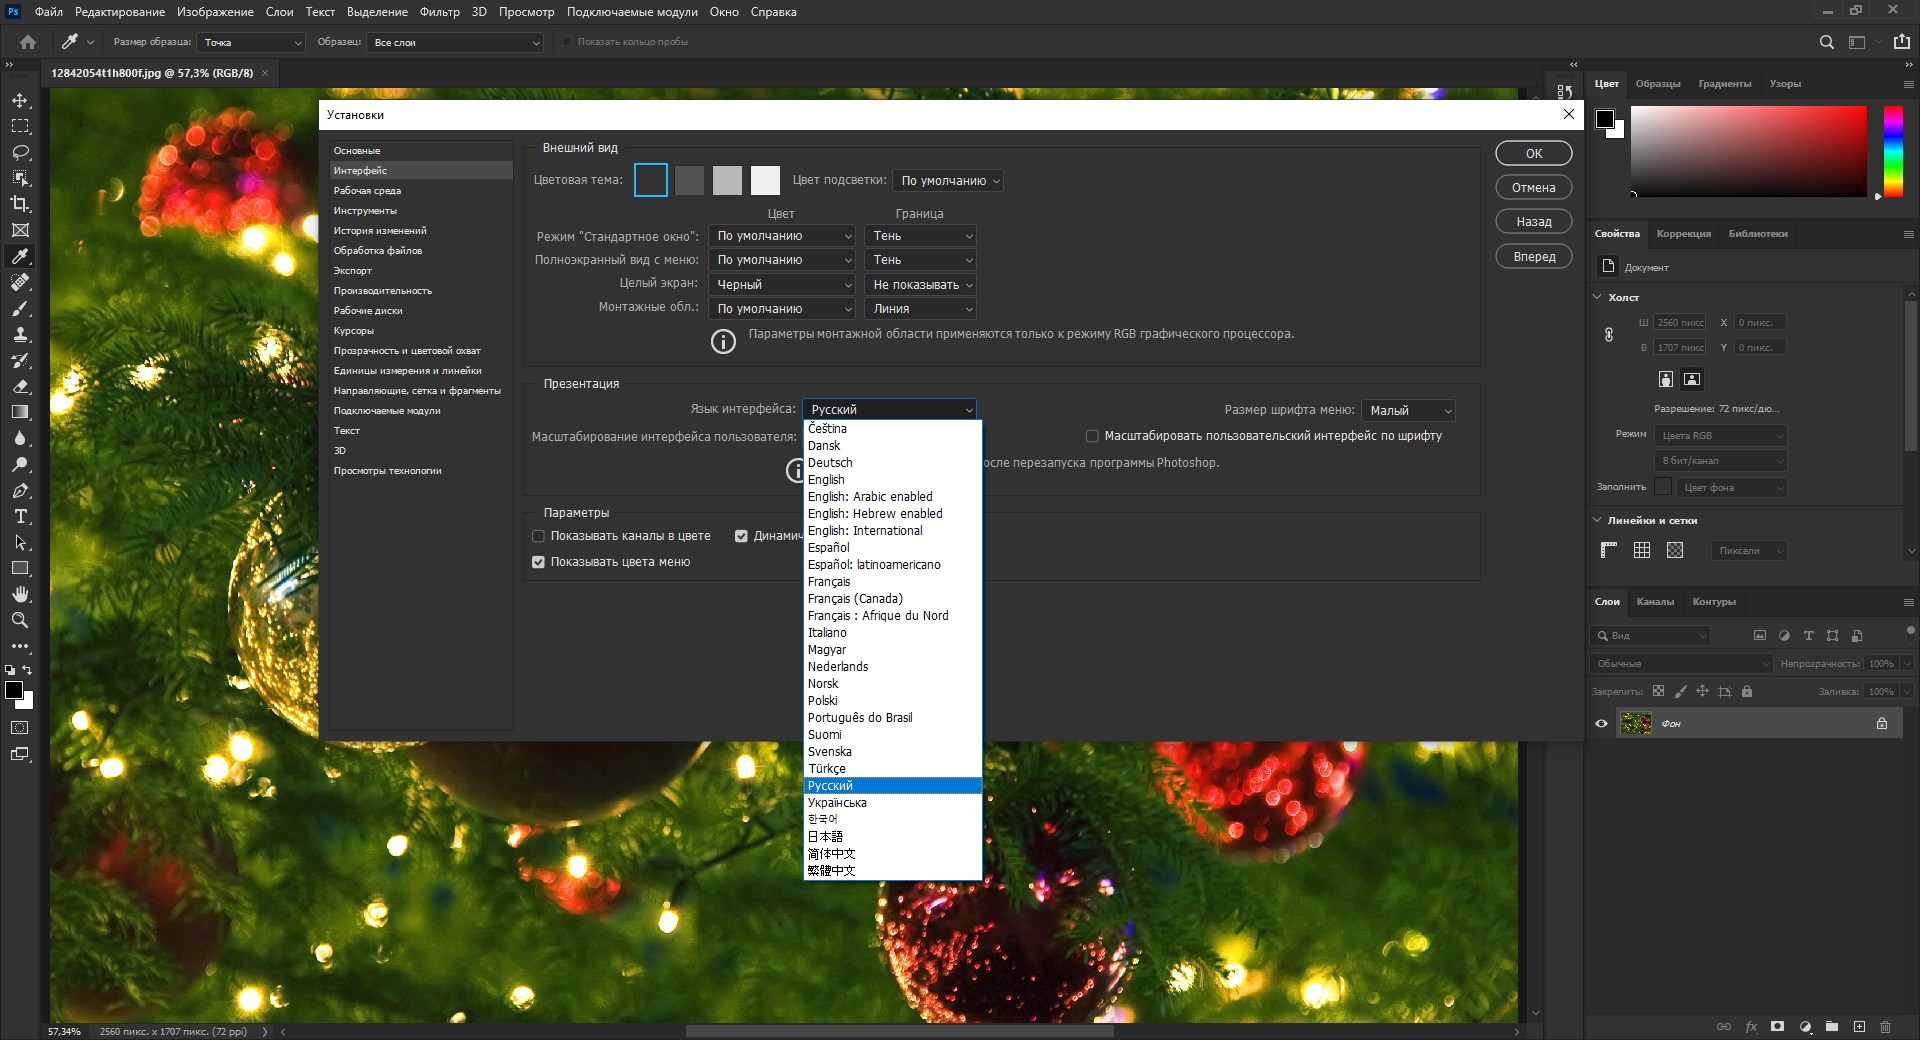 Adobe Photoshop 2022 Build 23.1.0.143 (x64) RePack by SanLex [Multi/Ru]